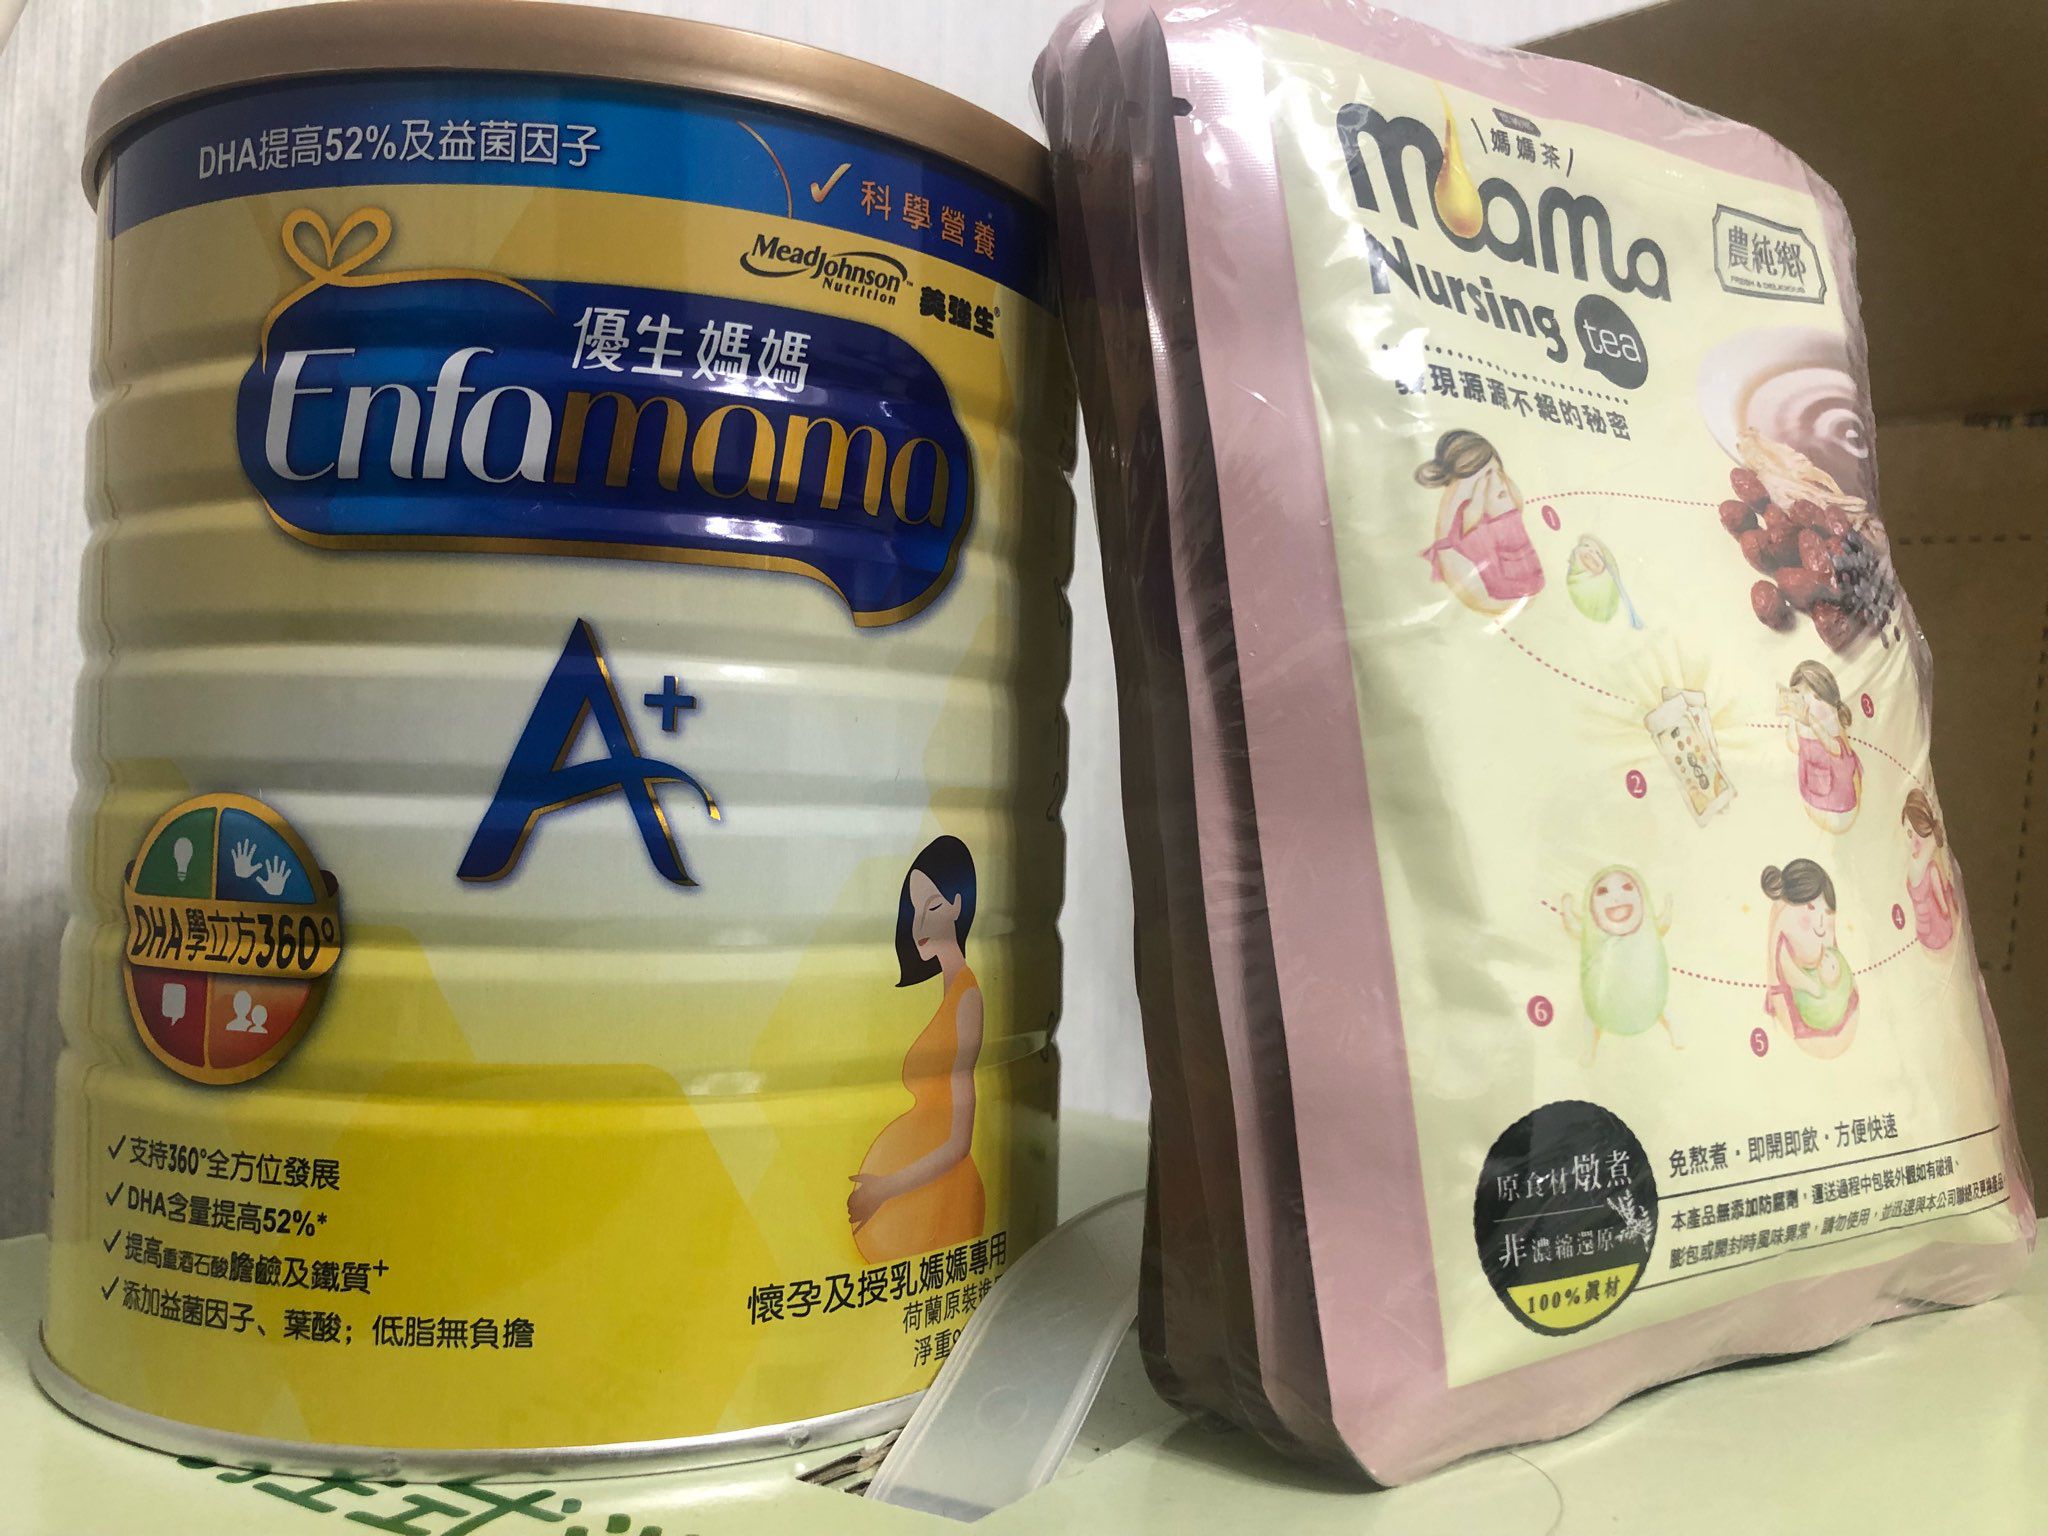 售優生媽媽A+配方奶粉與農純鄉Mamatea5包